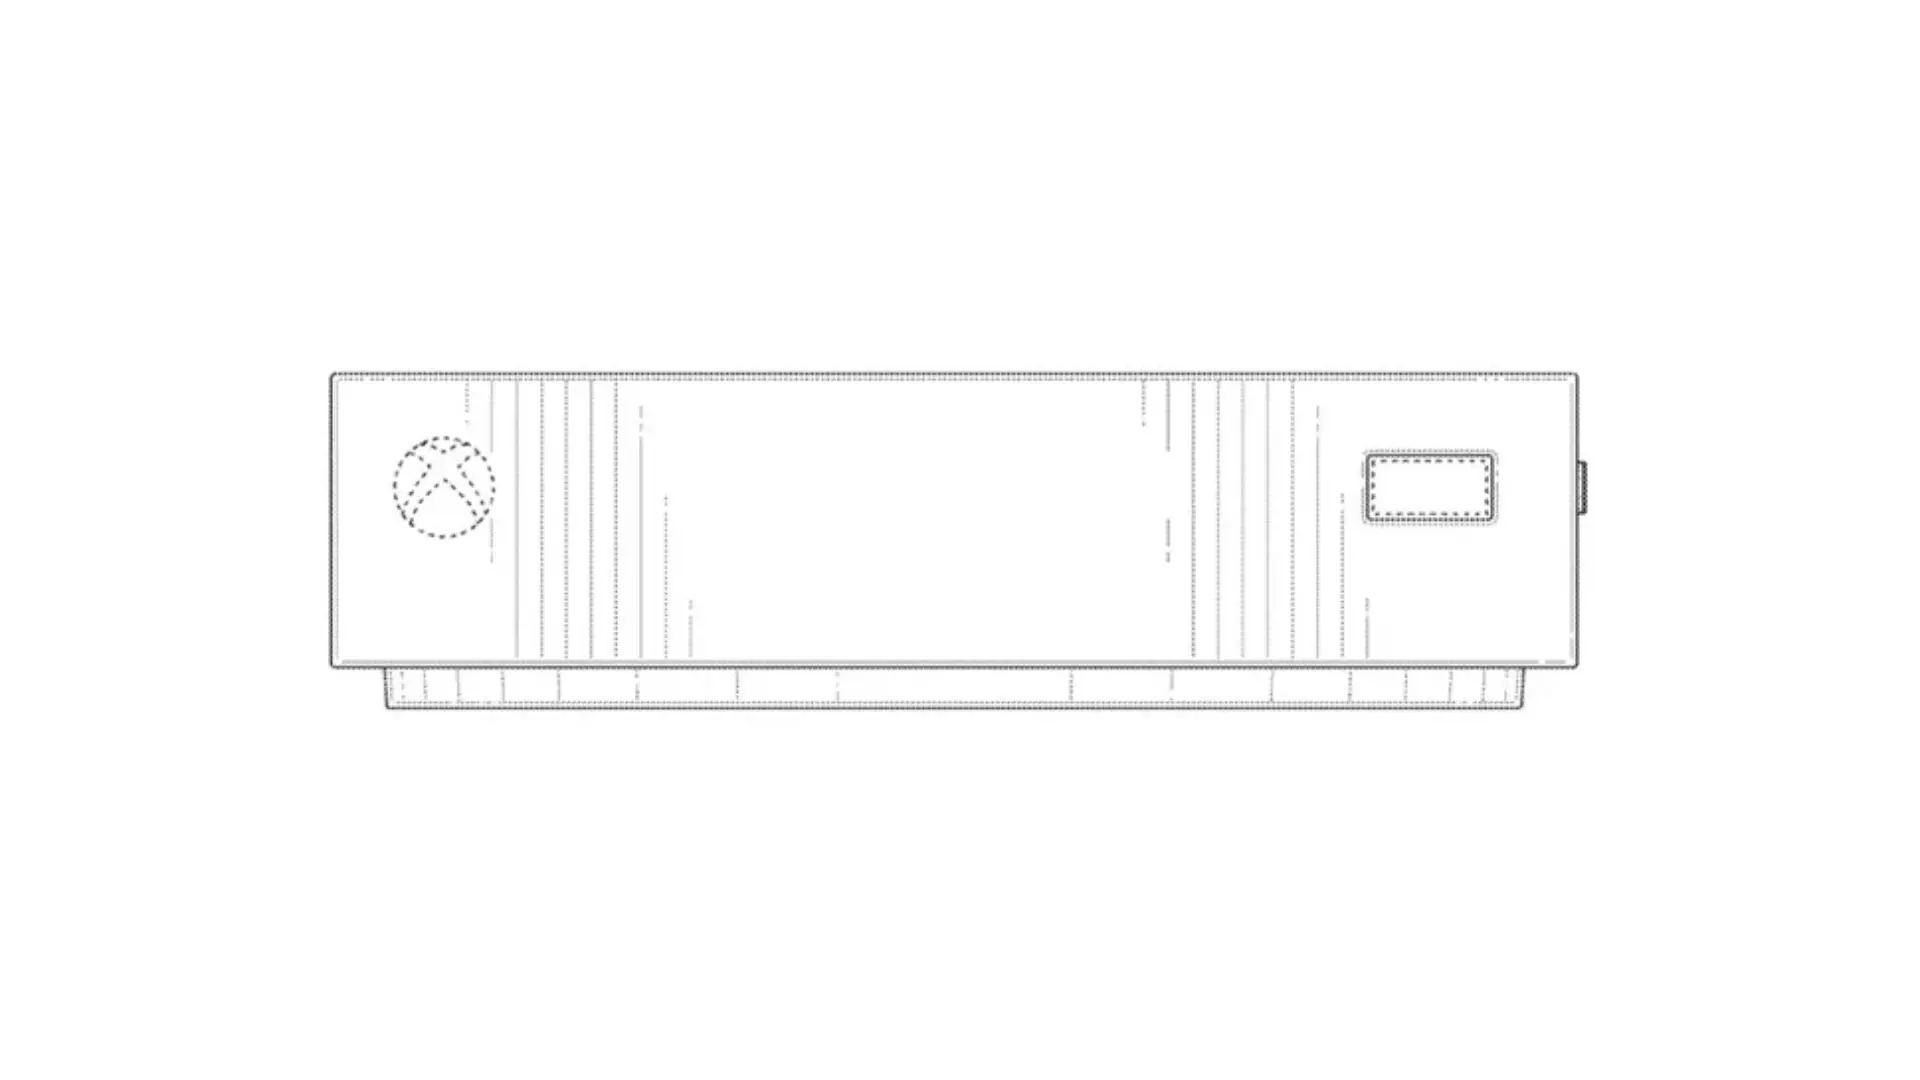 طراحی پنل جلویی کنسول ایکس باکس کی استون در اسناد ثبت اختراع مایکروسافت xbox keystone front view from microsoft patent